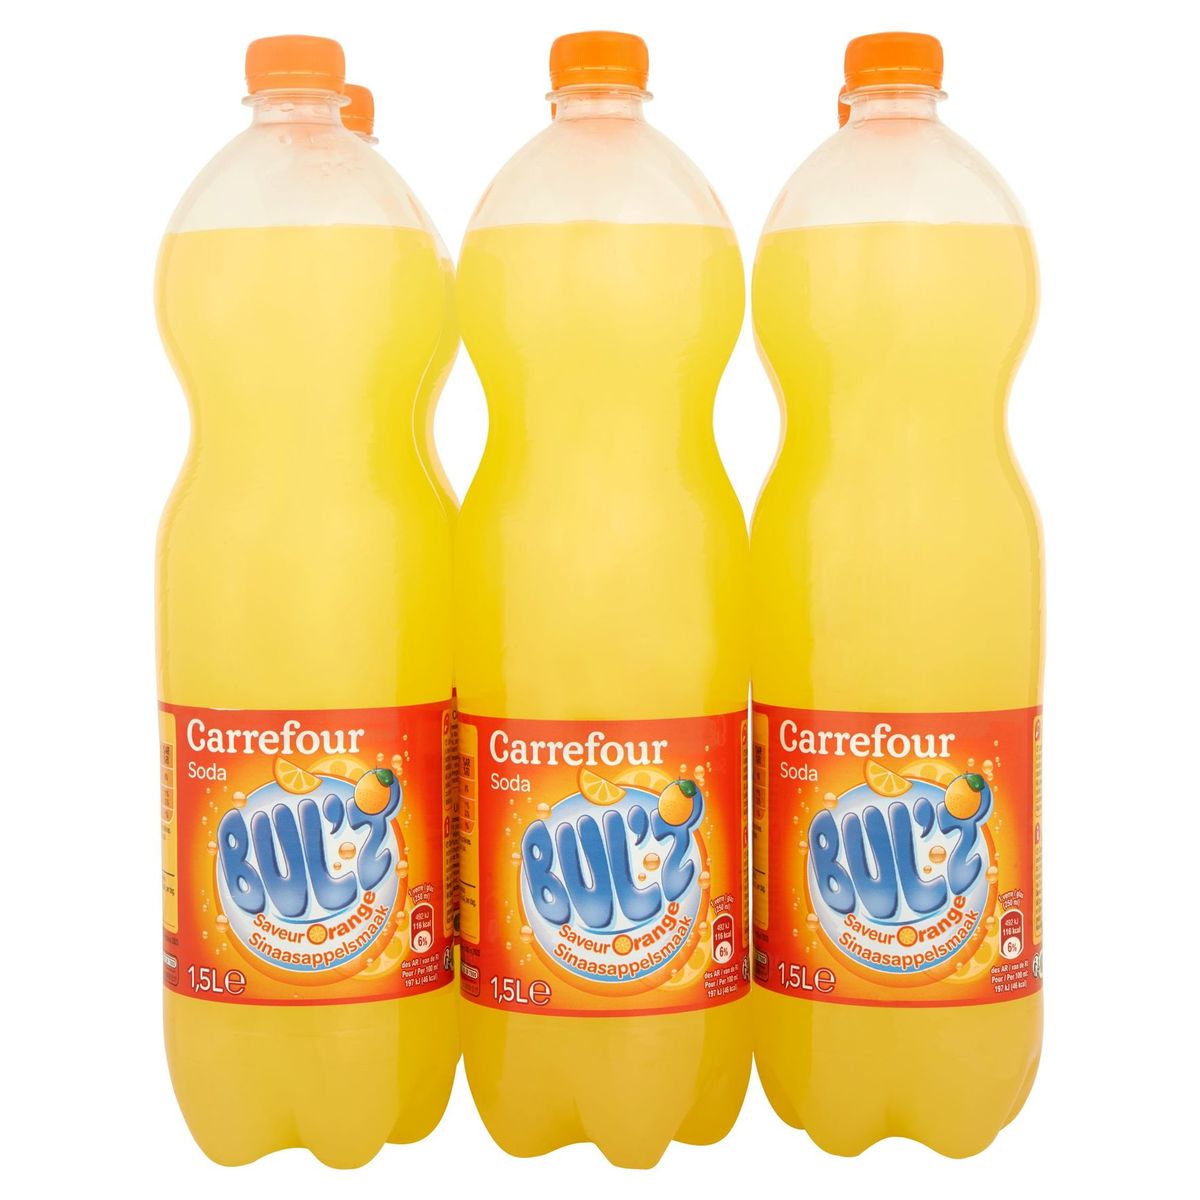 Carrefour Bul'z Soda Saveur Orange 6 x 1.5 L